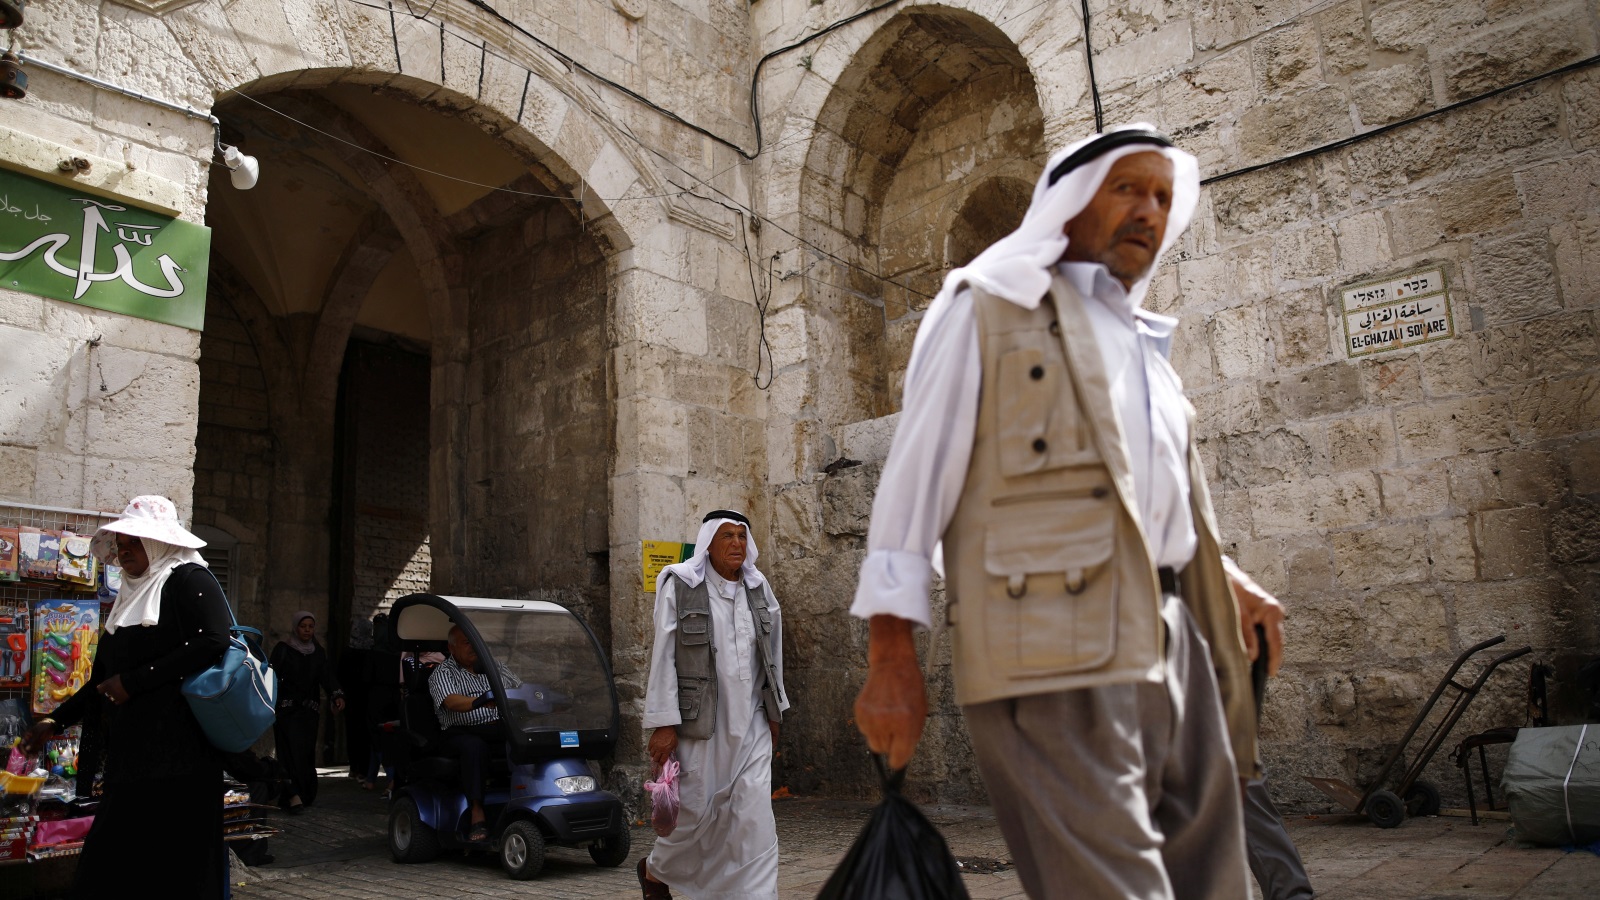 الاحتلال يغلق أحياء القدس بالسواتر الإسمنتية ويقيد حركة المقدسيين بشكل شبه كامل خلال فترة الأعياد اليهودية(رويترز)